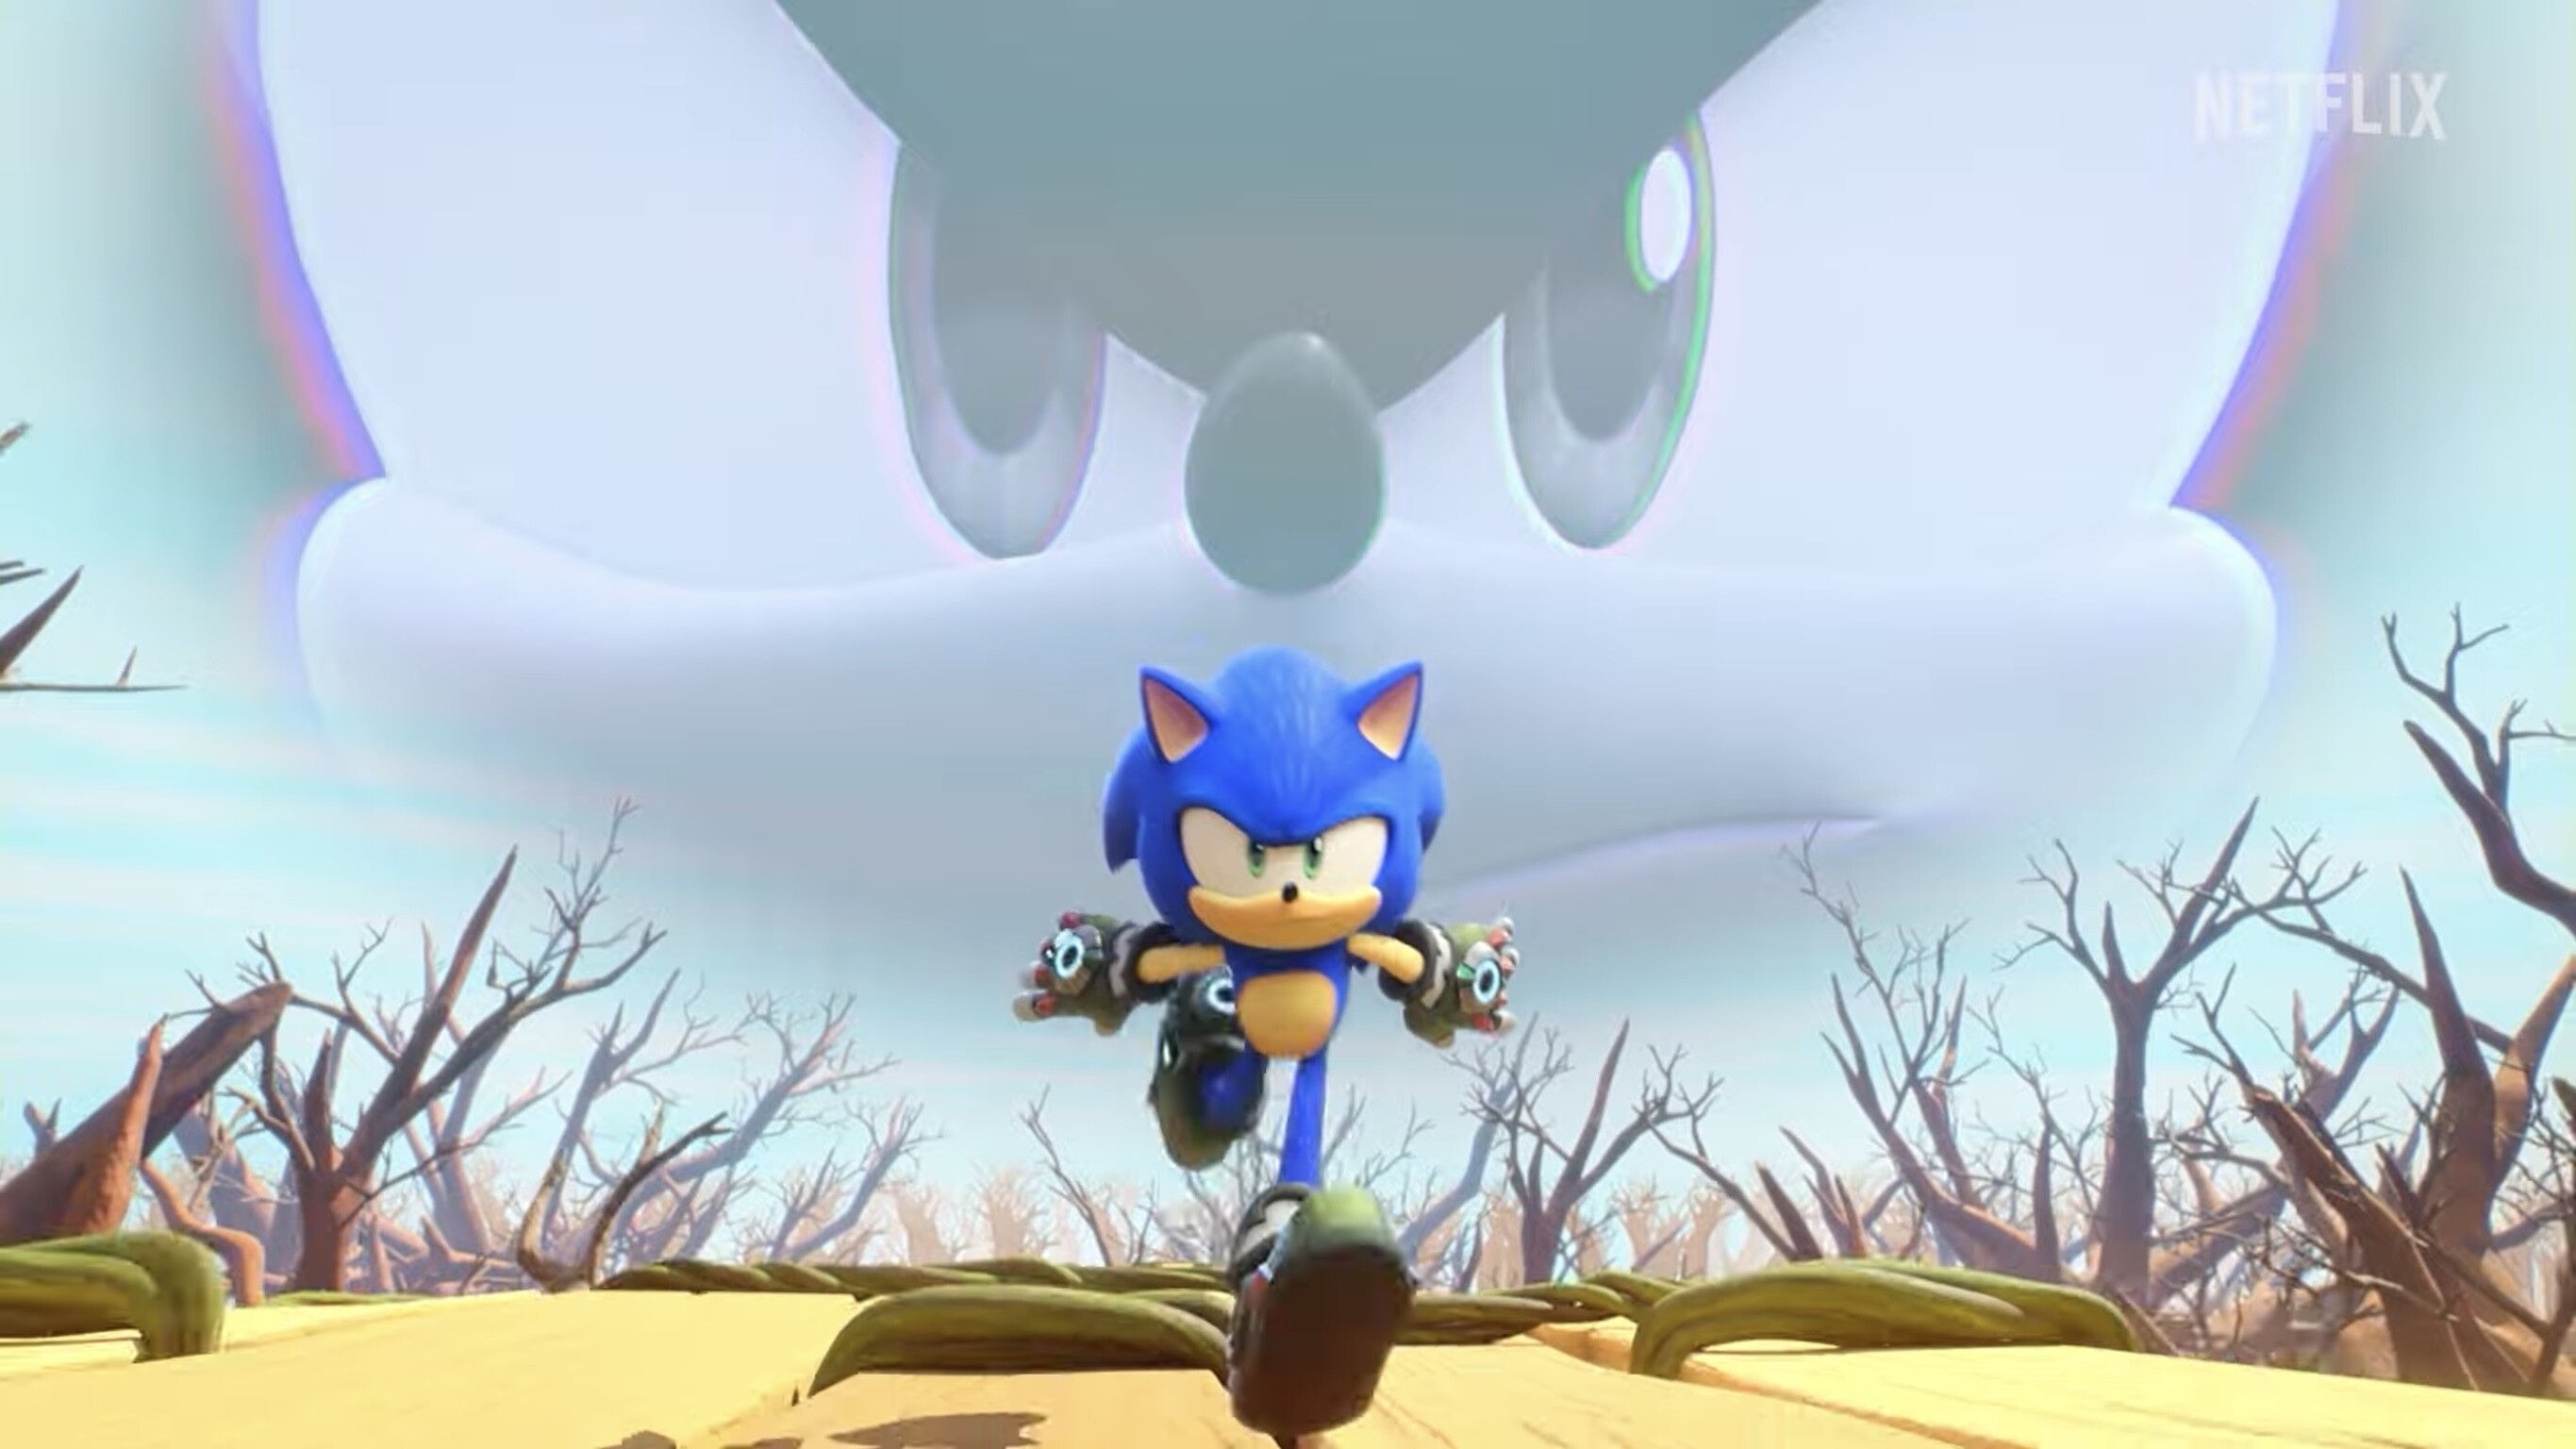 Sonic Prime Season 2 Launches Today - Media - Sonic Stadium